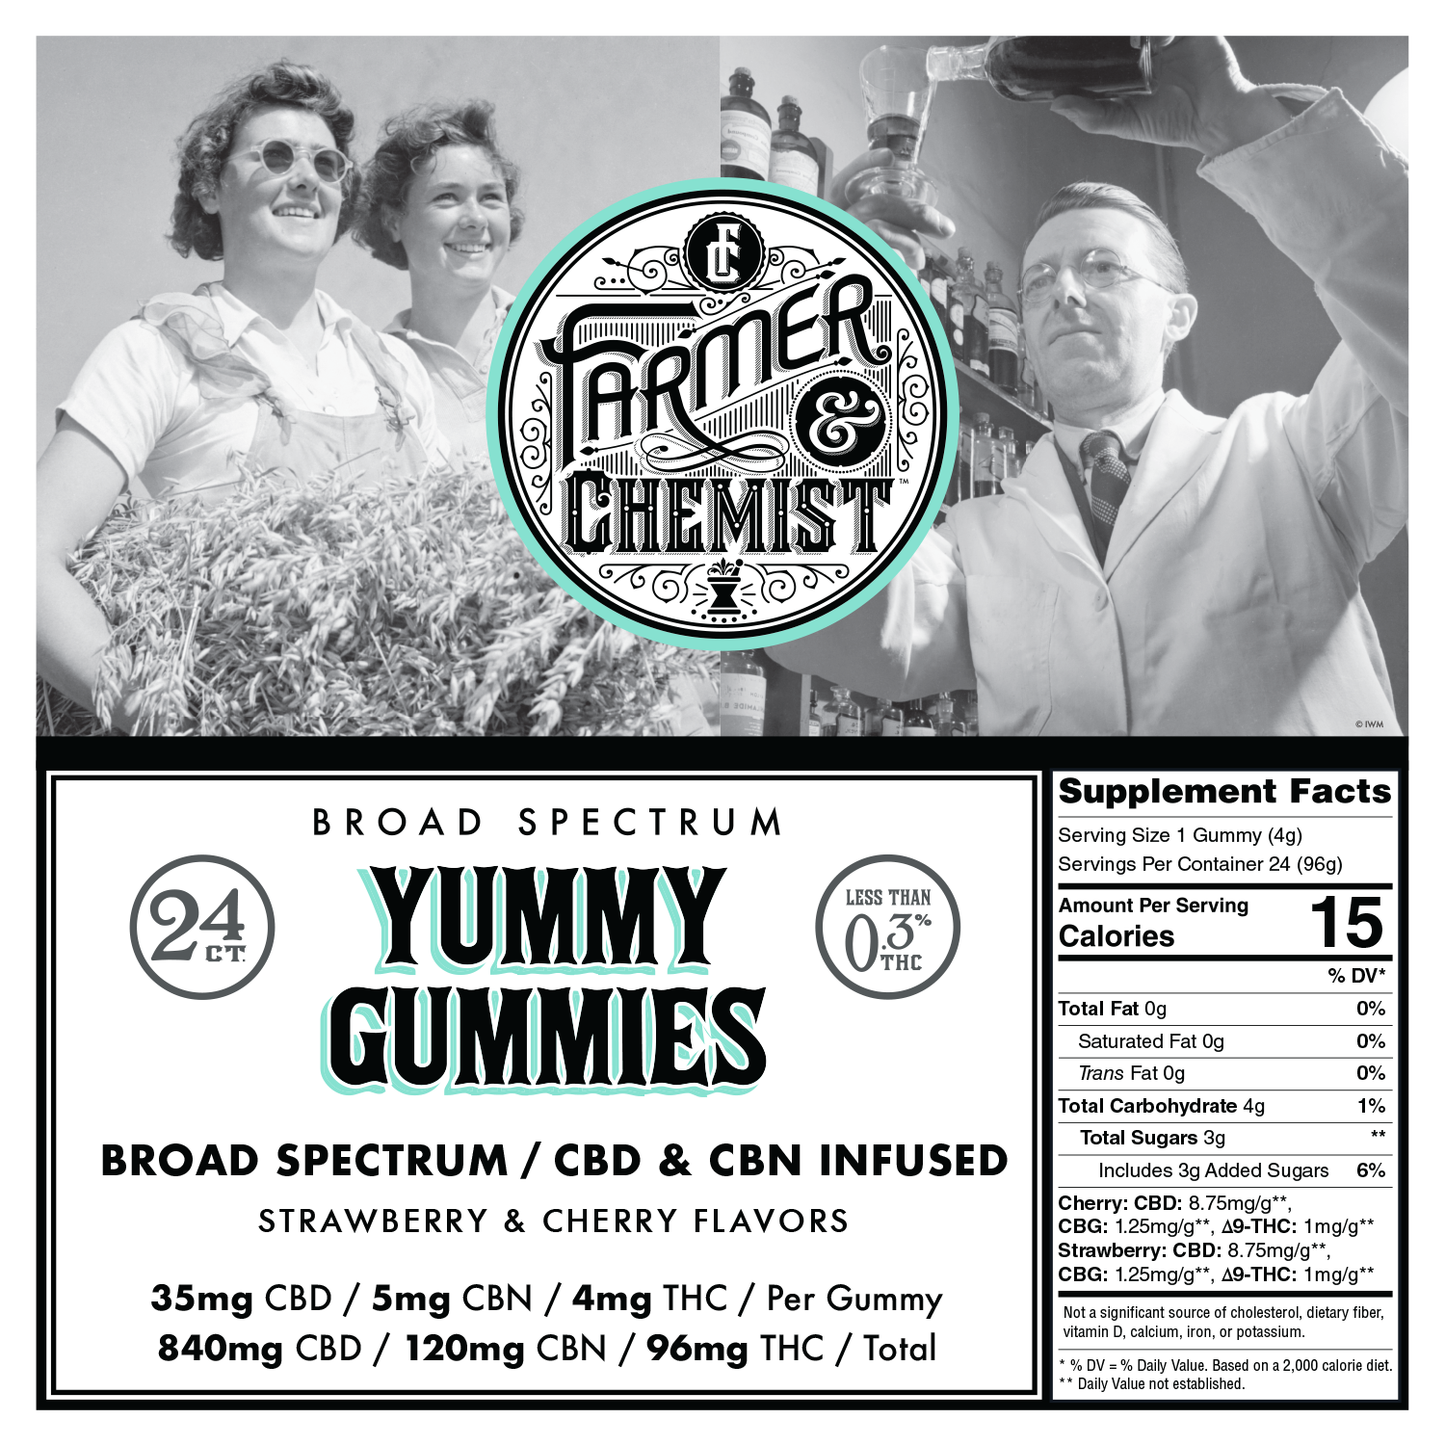 YUMMY GUMMIES - 24ct 35mg CBD / 5mg CBN / 4mg THC Gummies (Case pack of 4)